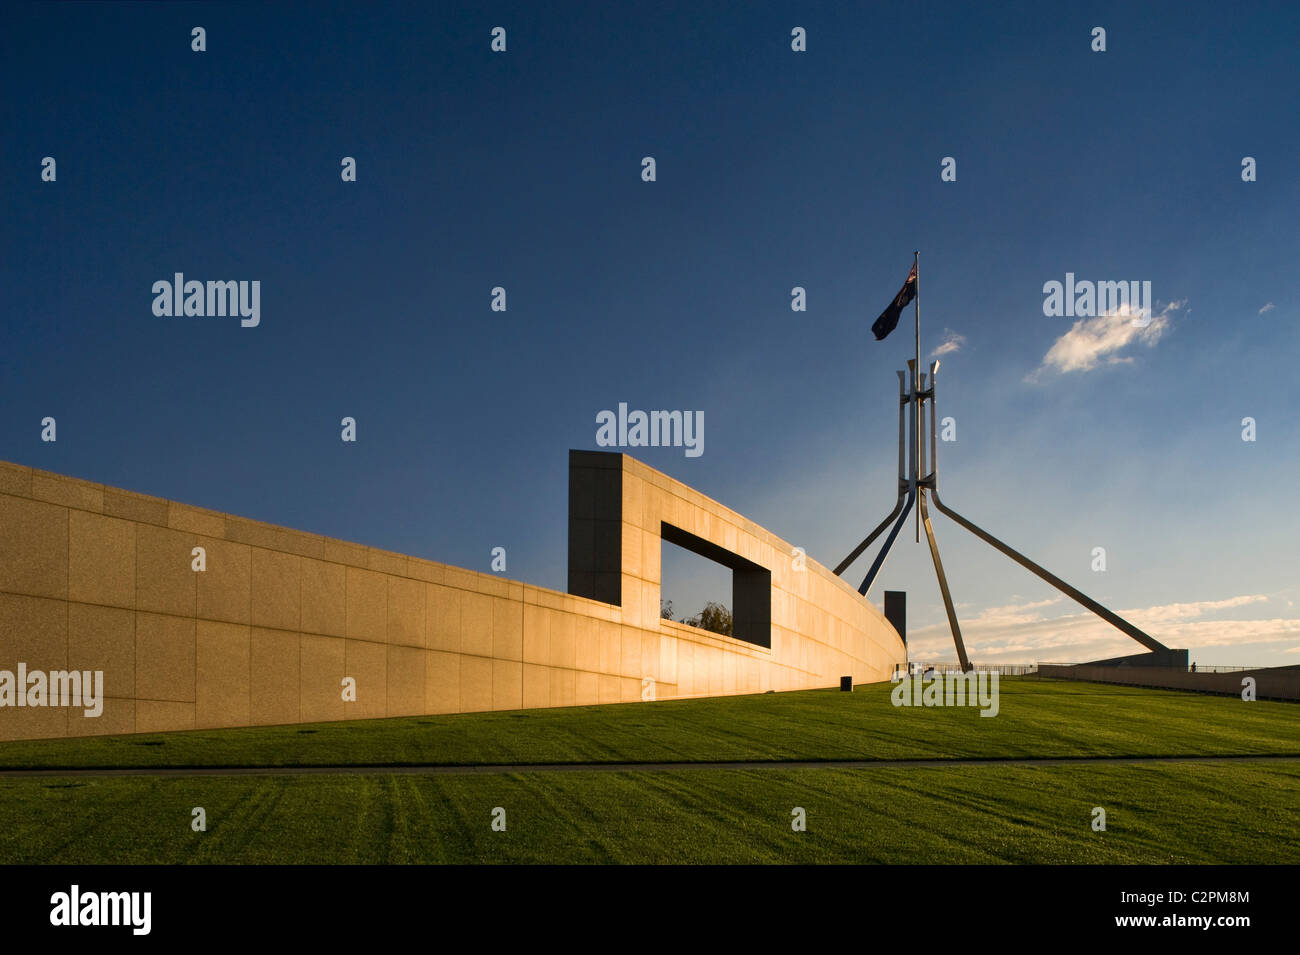 Parlament von Australien, Canberra, ACT, Australia. Stockfoto